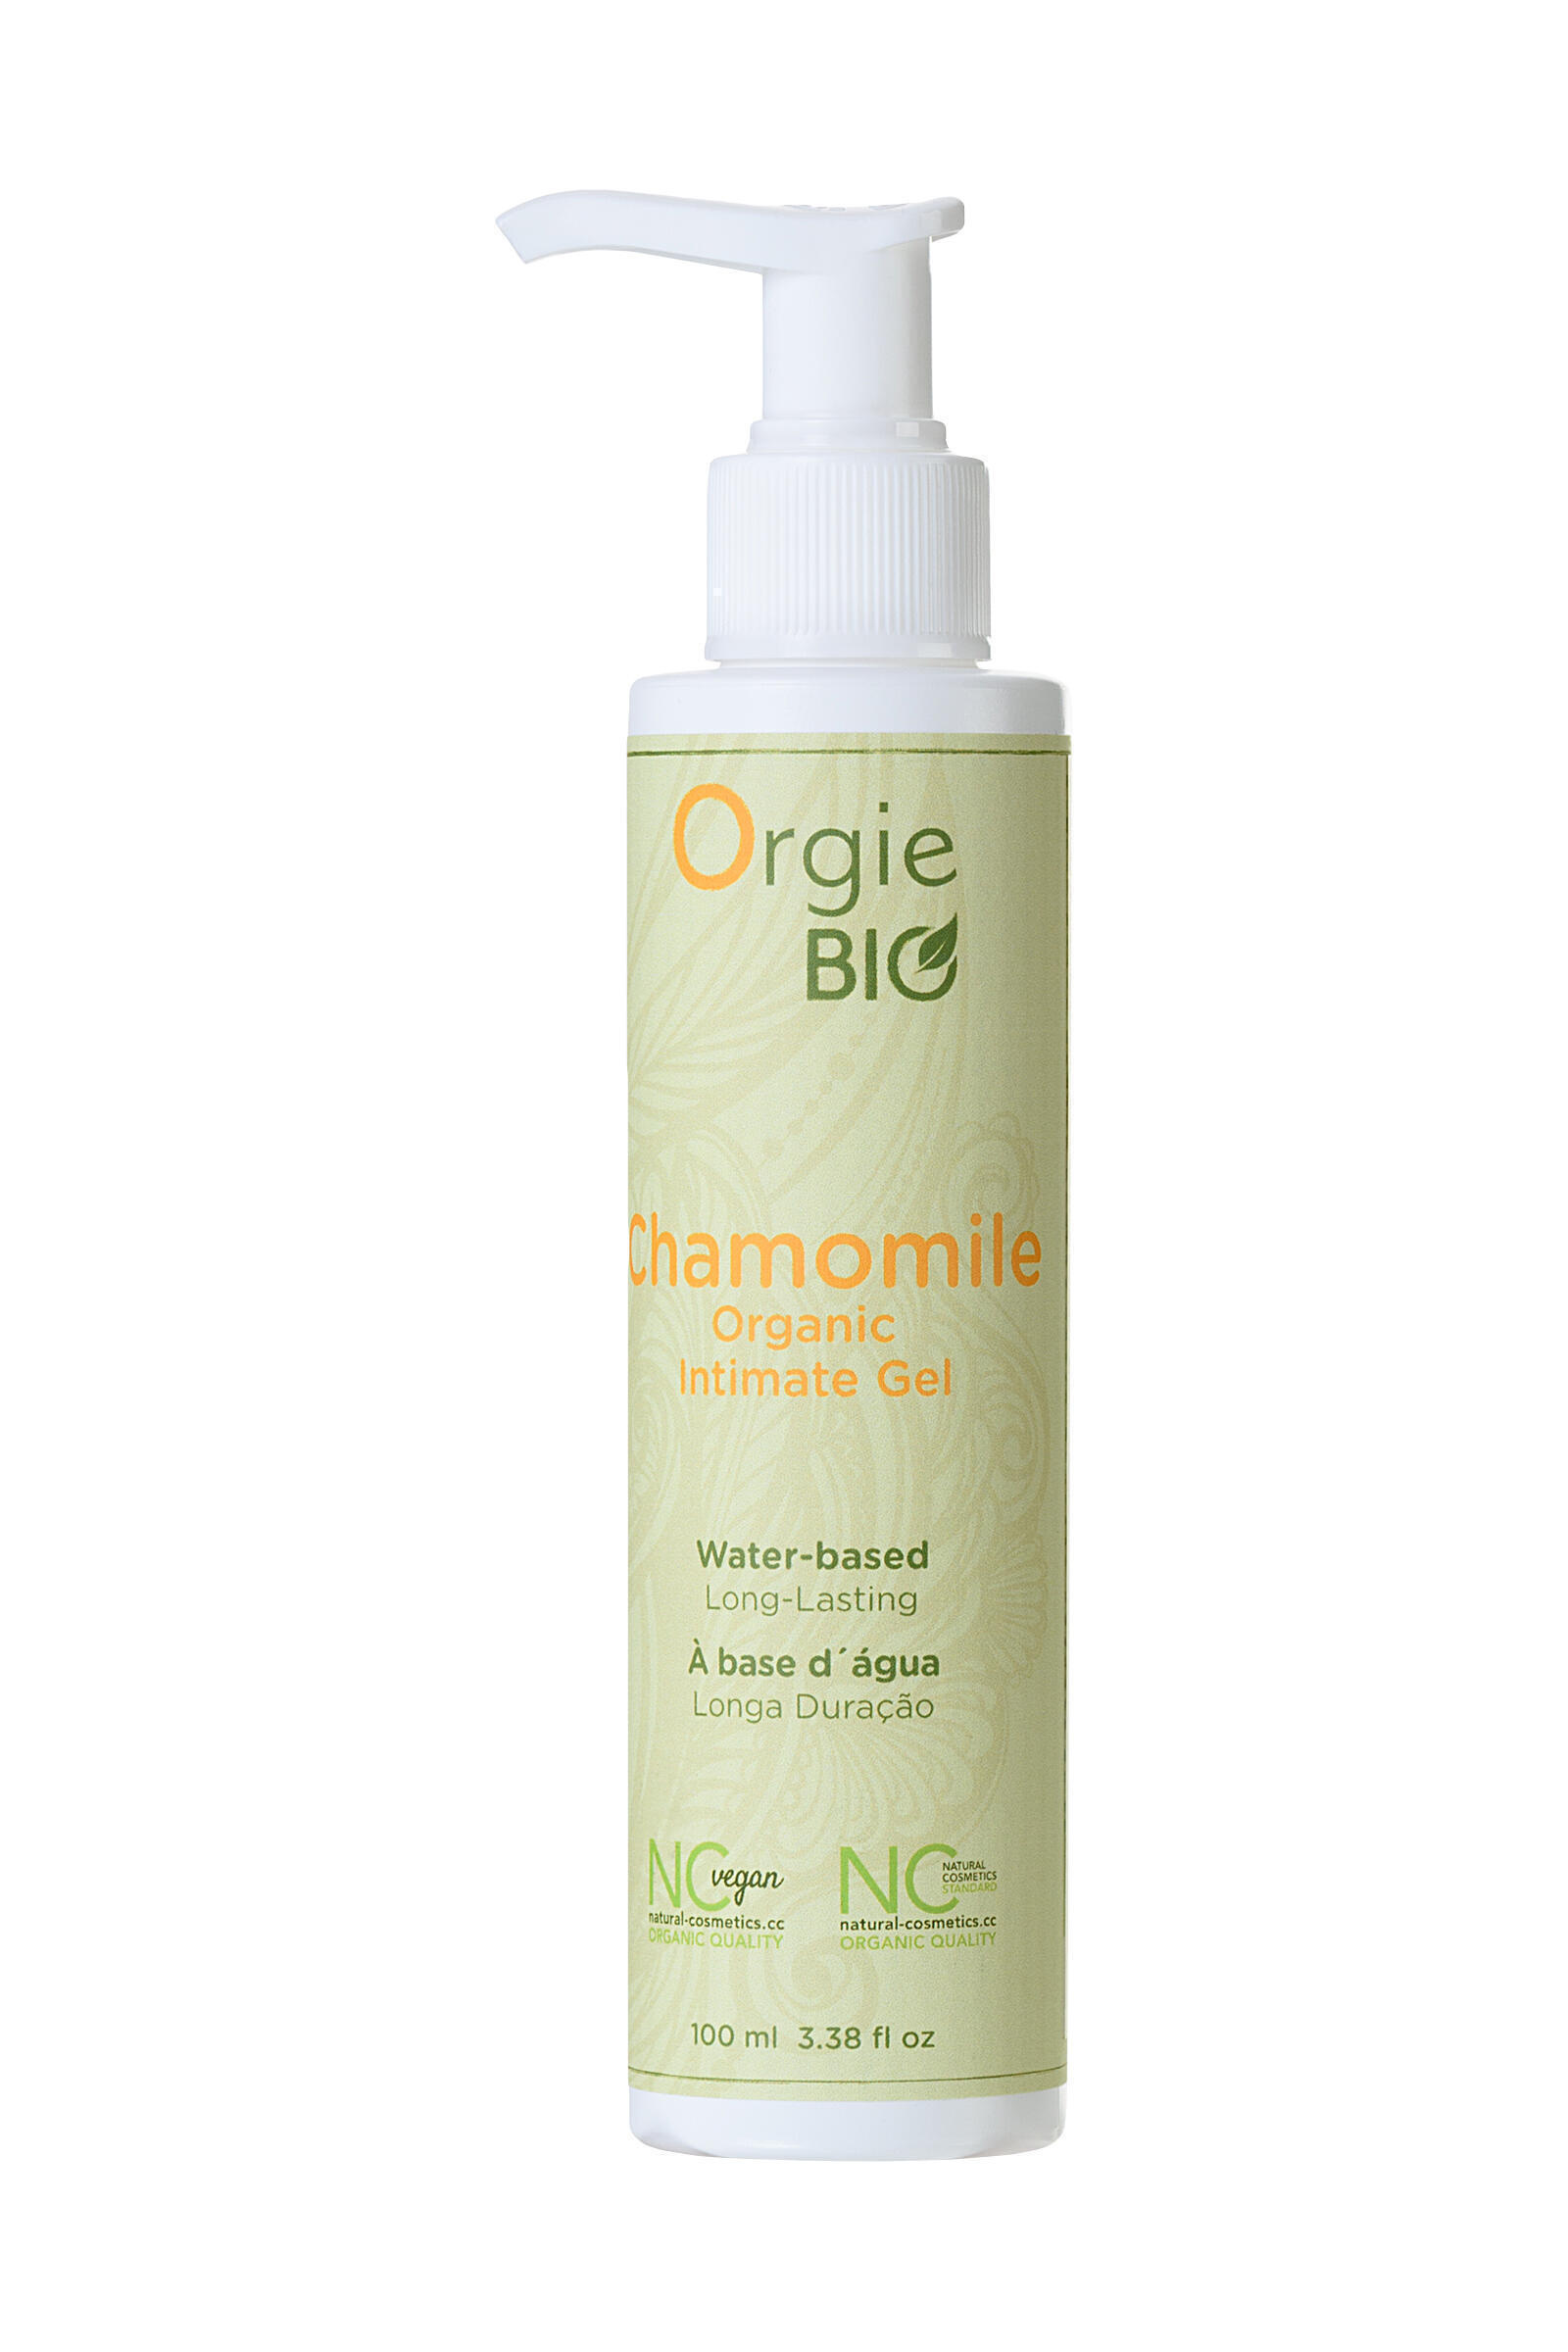 Органический интимный гель Orgie Bio Chamomile с ароматом ромашки, 100 мл